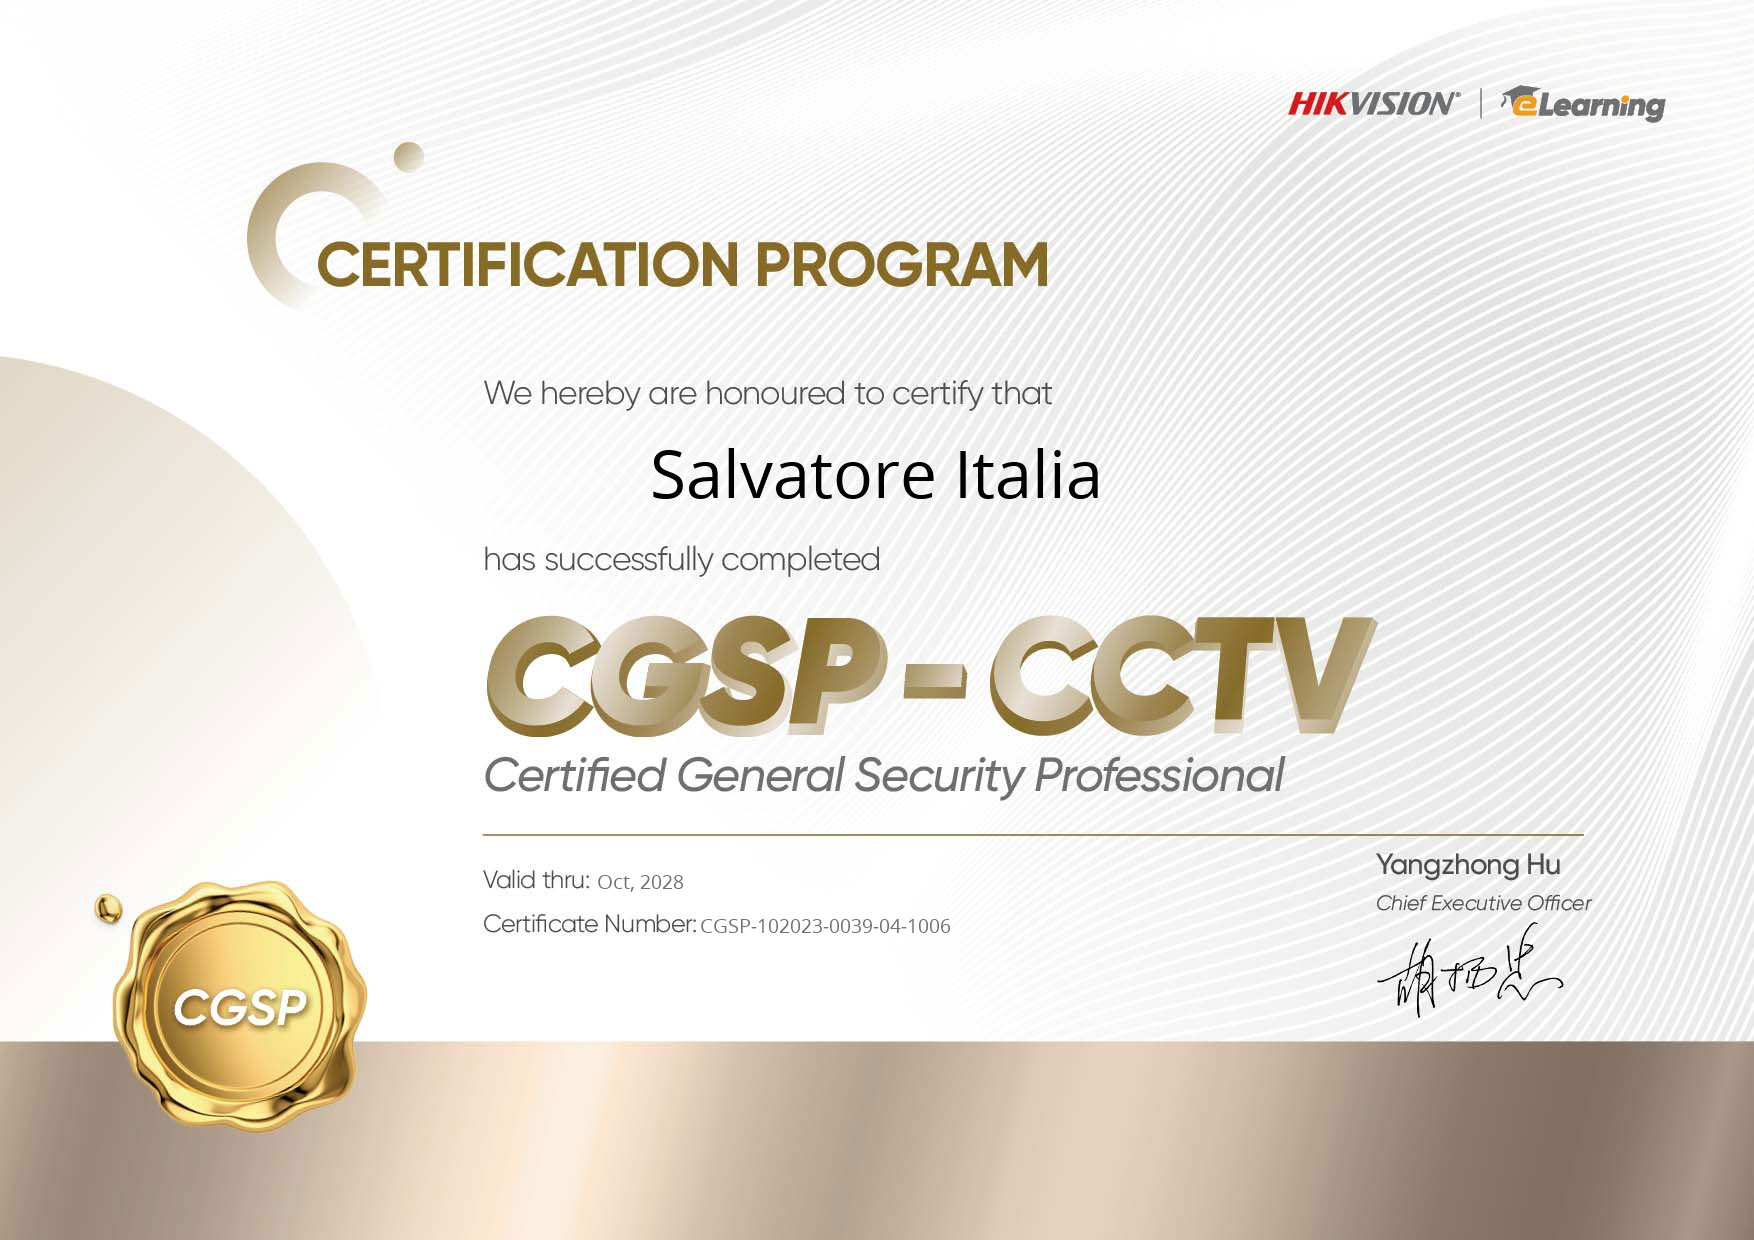 CGSP-CCTV HIKVISION